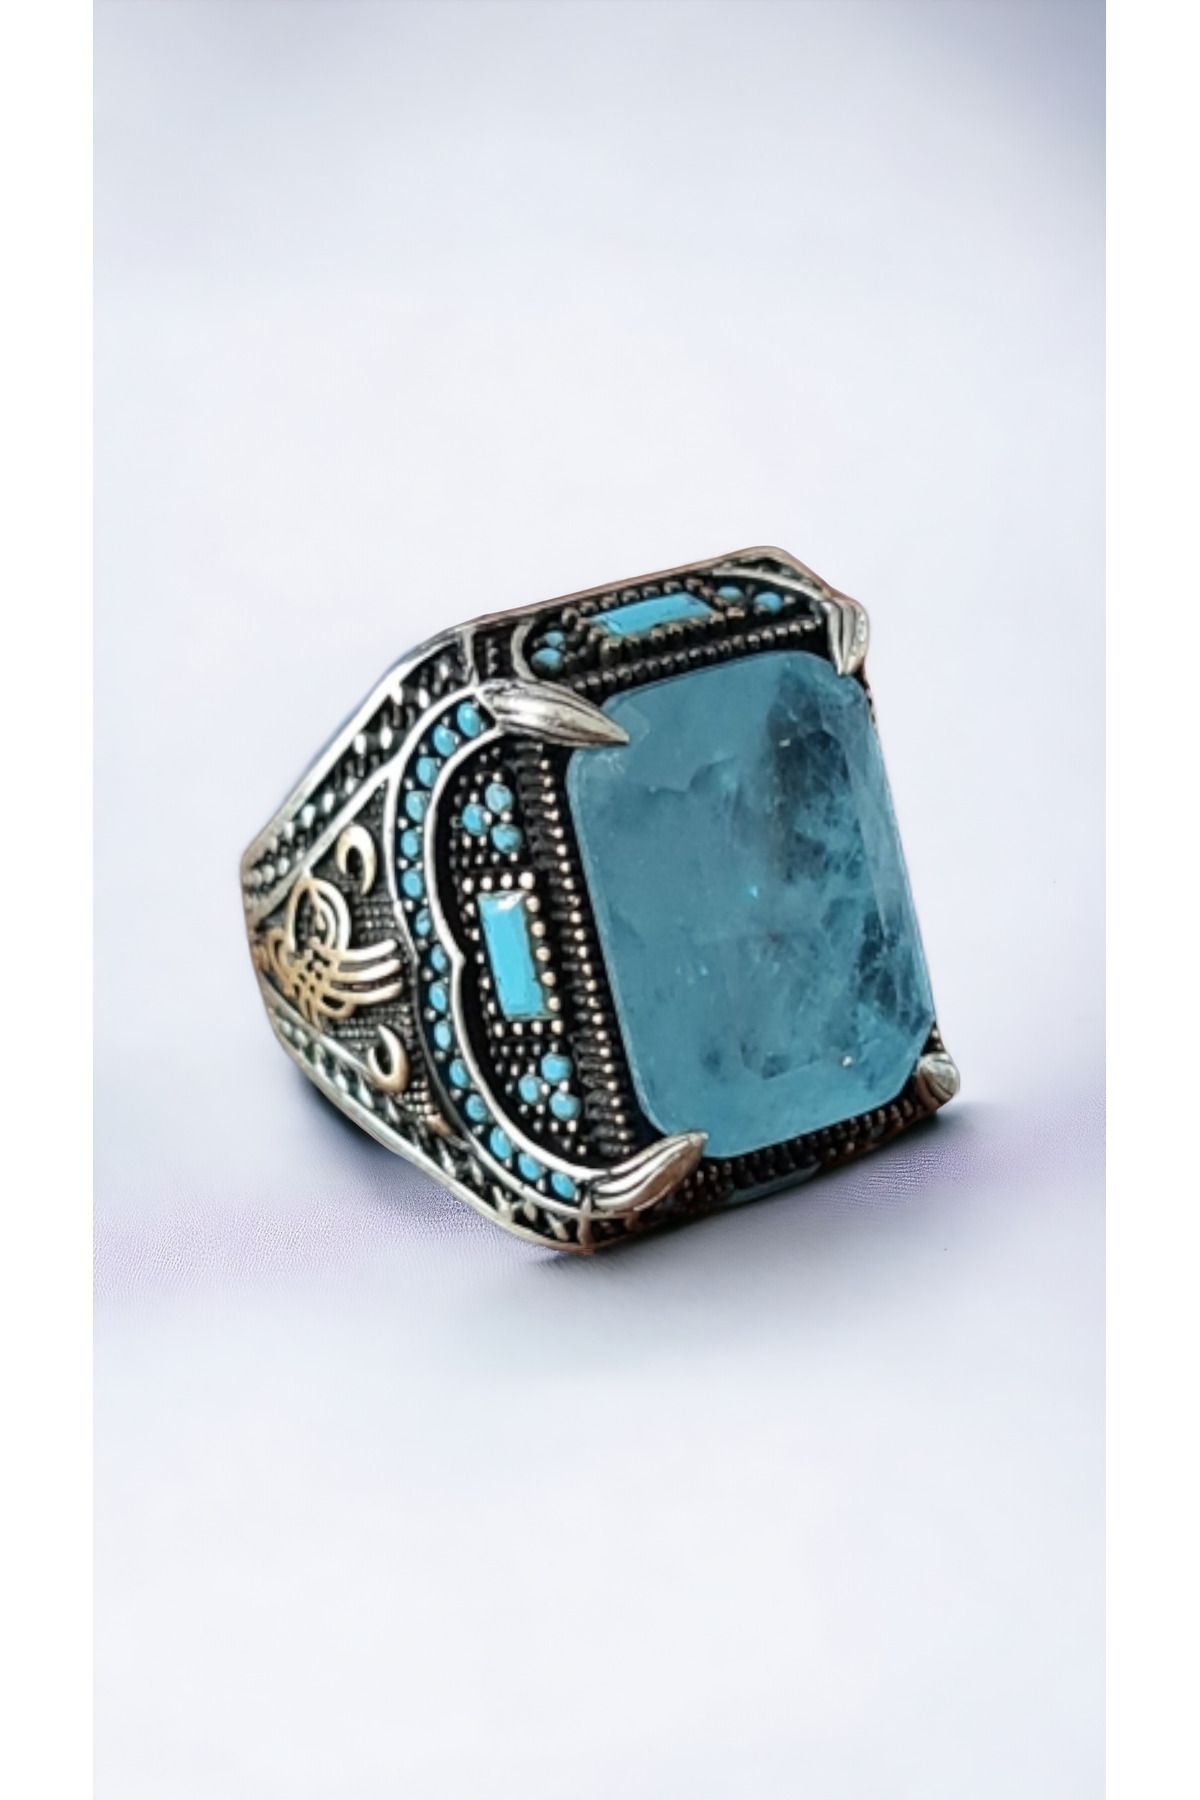 La'Vanti Designs Paraibu Doğal Taşlı Erzurum Kalem İşçilikli 925 Ayar Gümüş Erkek Yüzük Para Şans Kısmet Yüzüğü